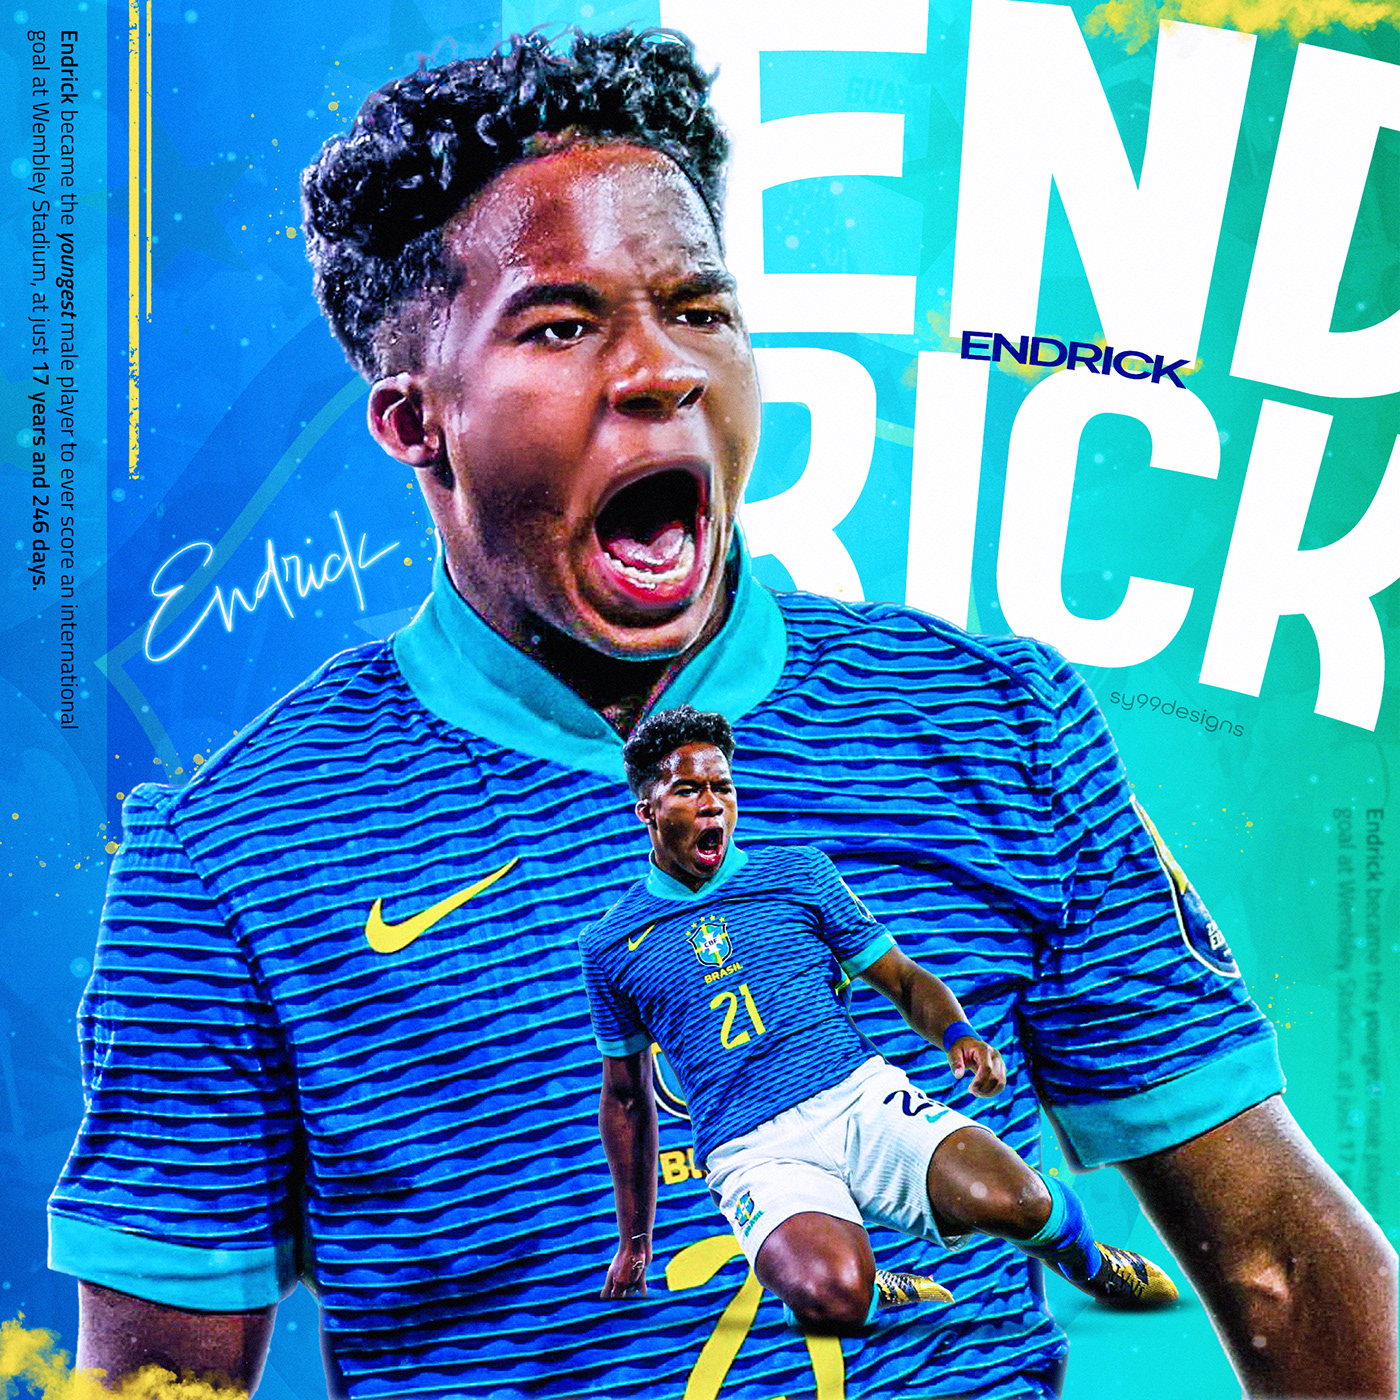 Brazil endrick Real Madrid SMSports graphic design  Football poster soccer designer Freelance football